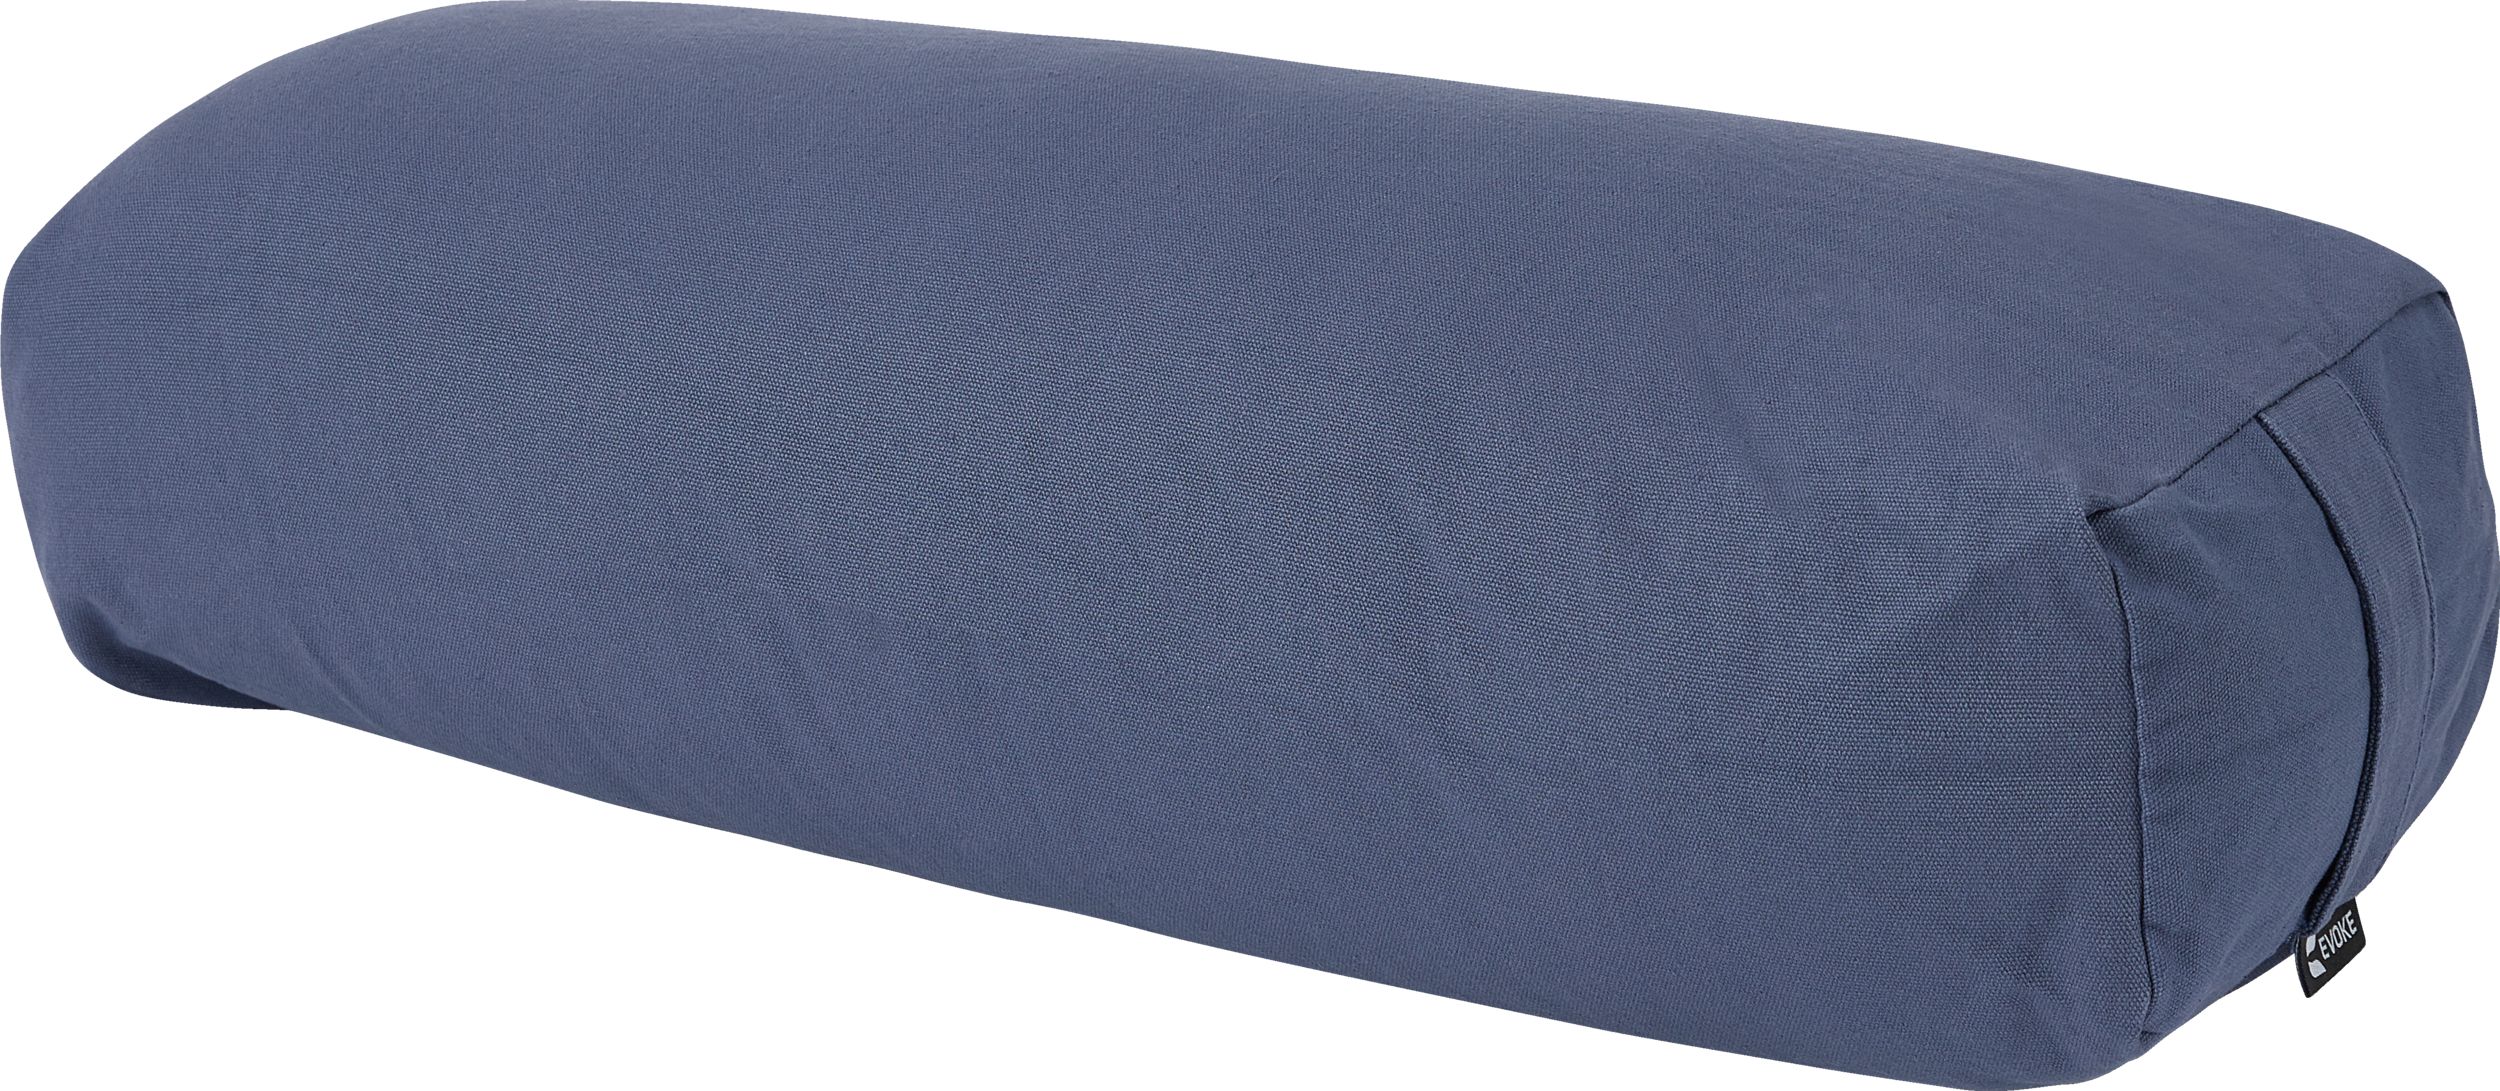 Evoke Rectangular Bolster Pillow